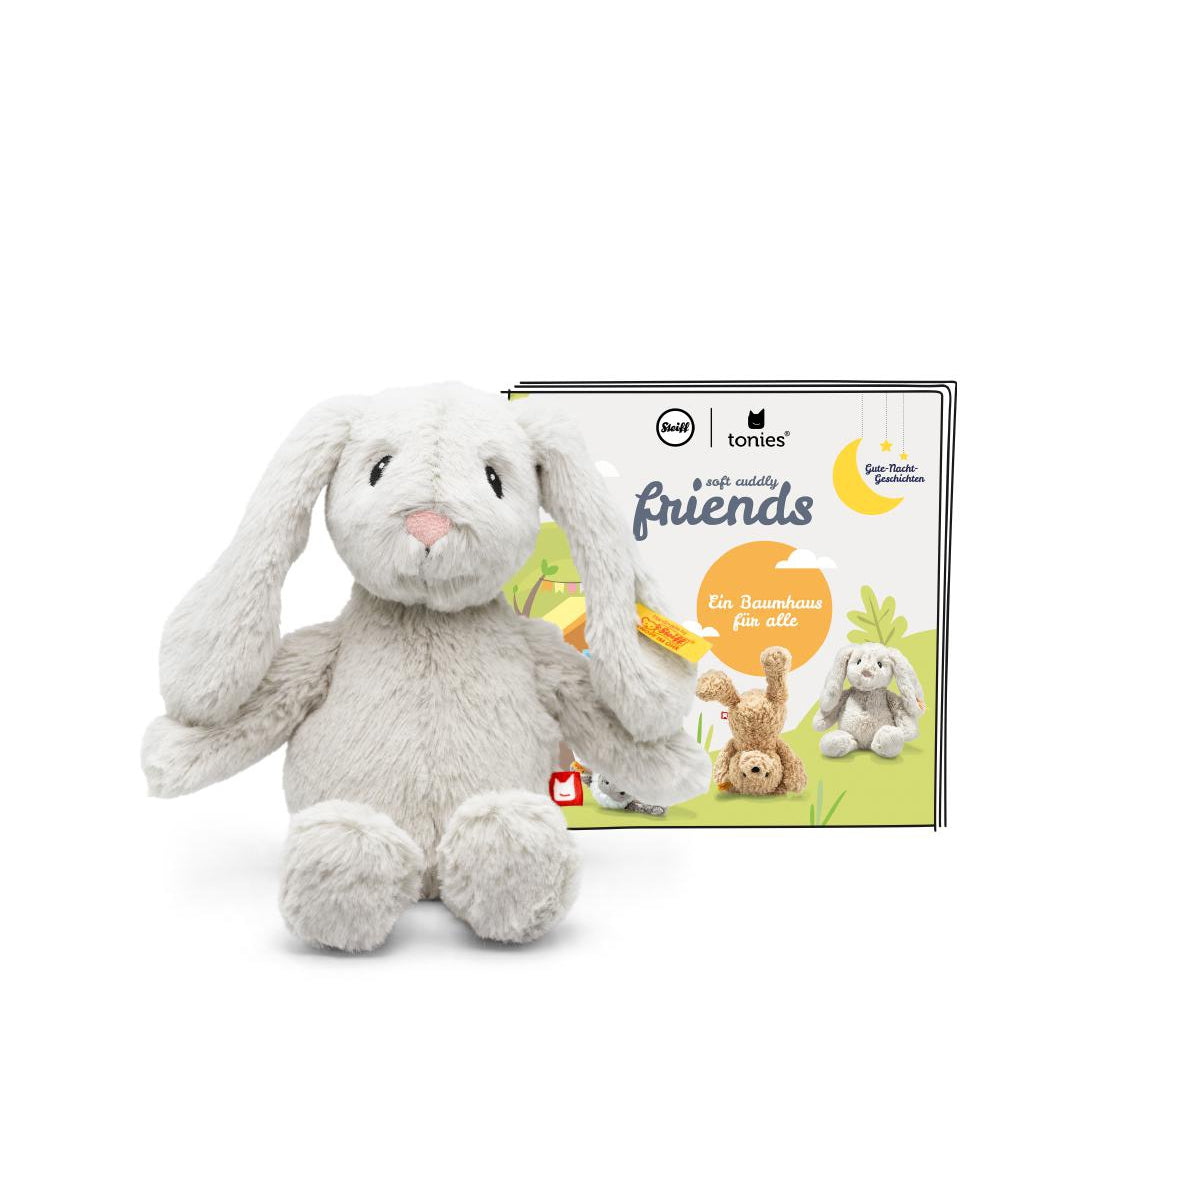 Steiff Cuddly Friends - Hoppie Rabbit